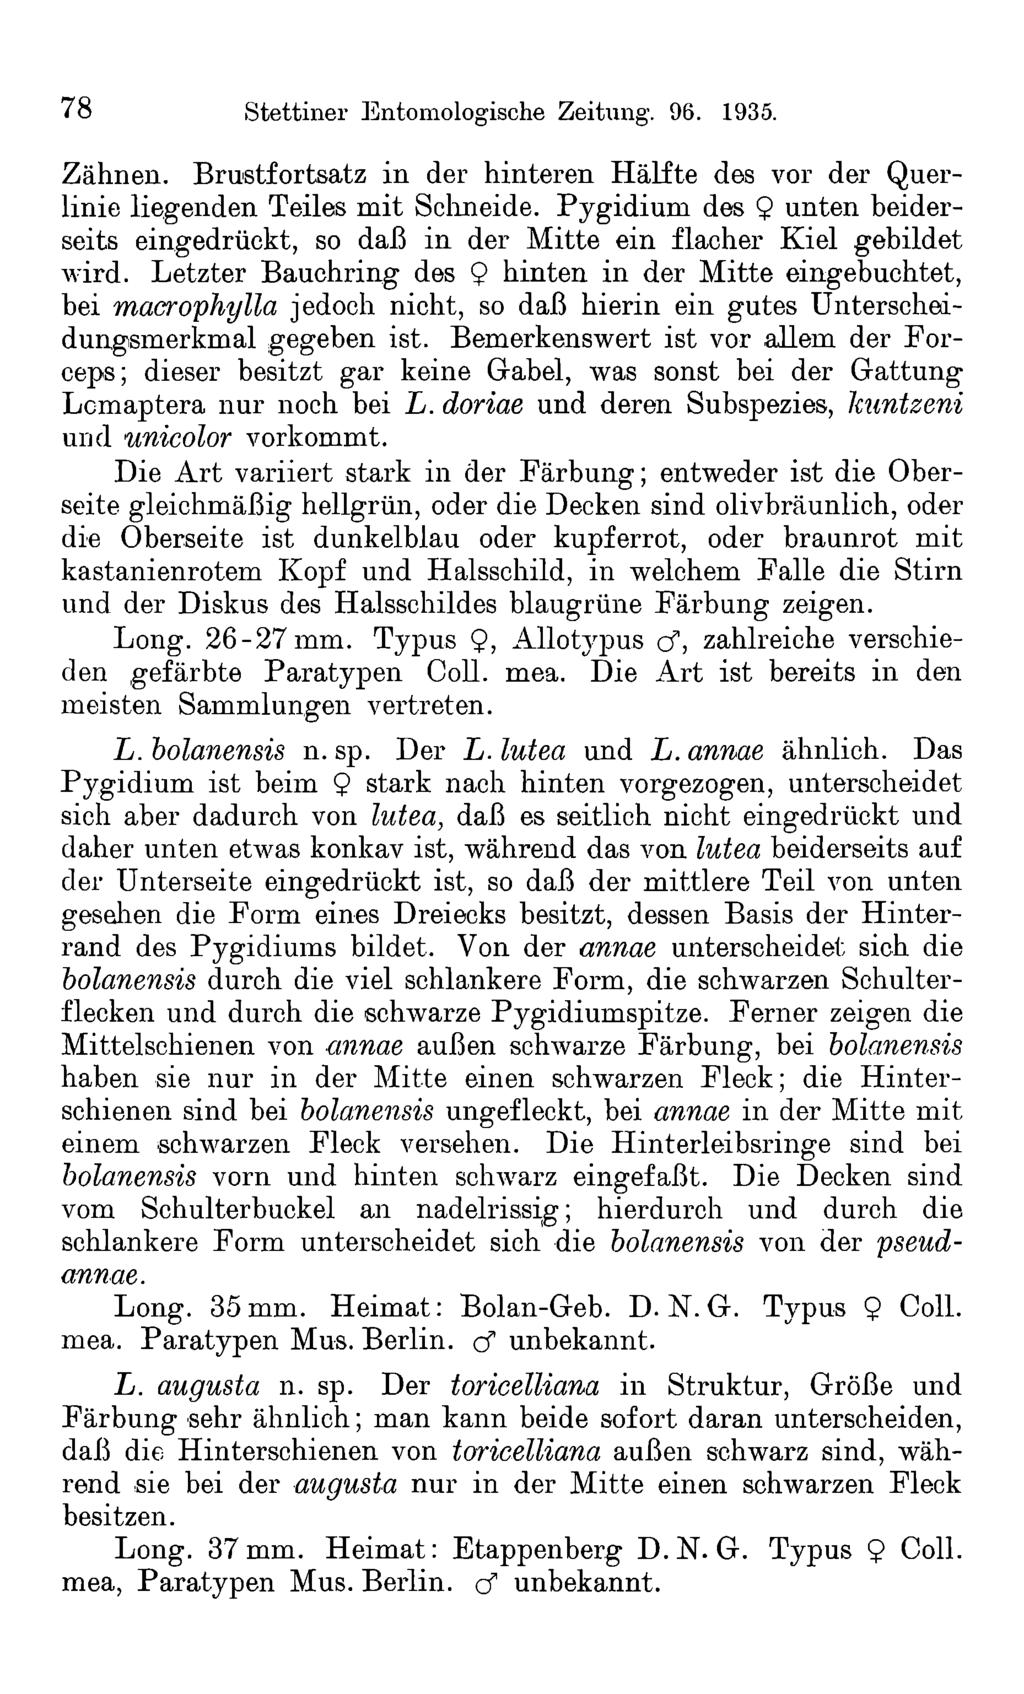 78 Stettiner Entomologische Zeitung. 96. 1935. Zähnen. Brustfortsatz in der hinteren Hälfte des vor der Querlinie liegenden Teiles mit Schneide.